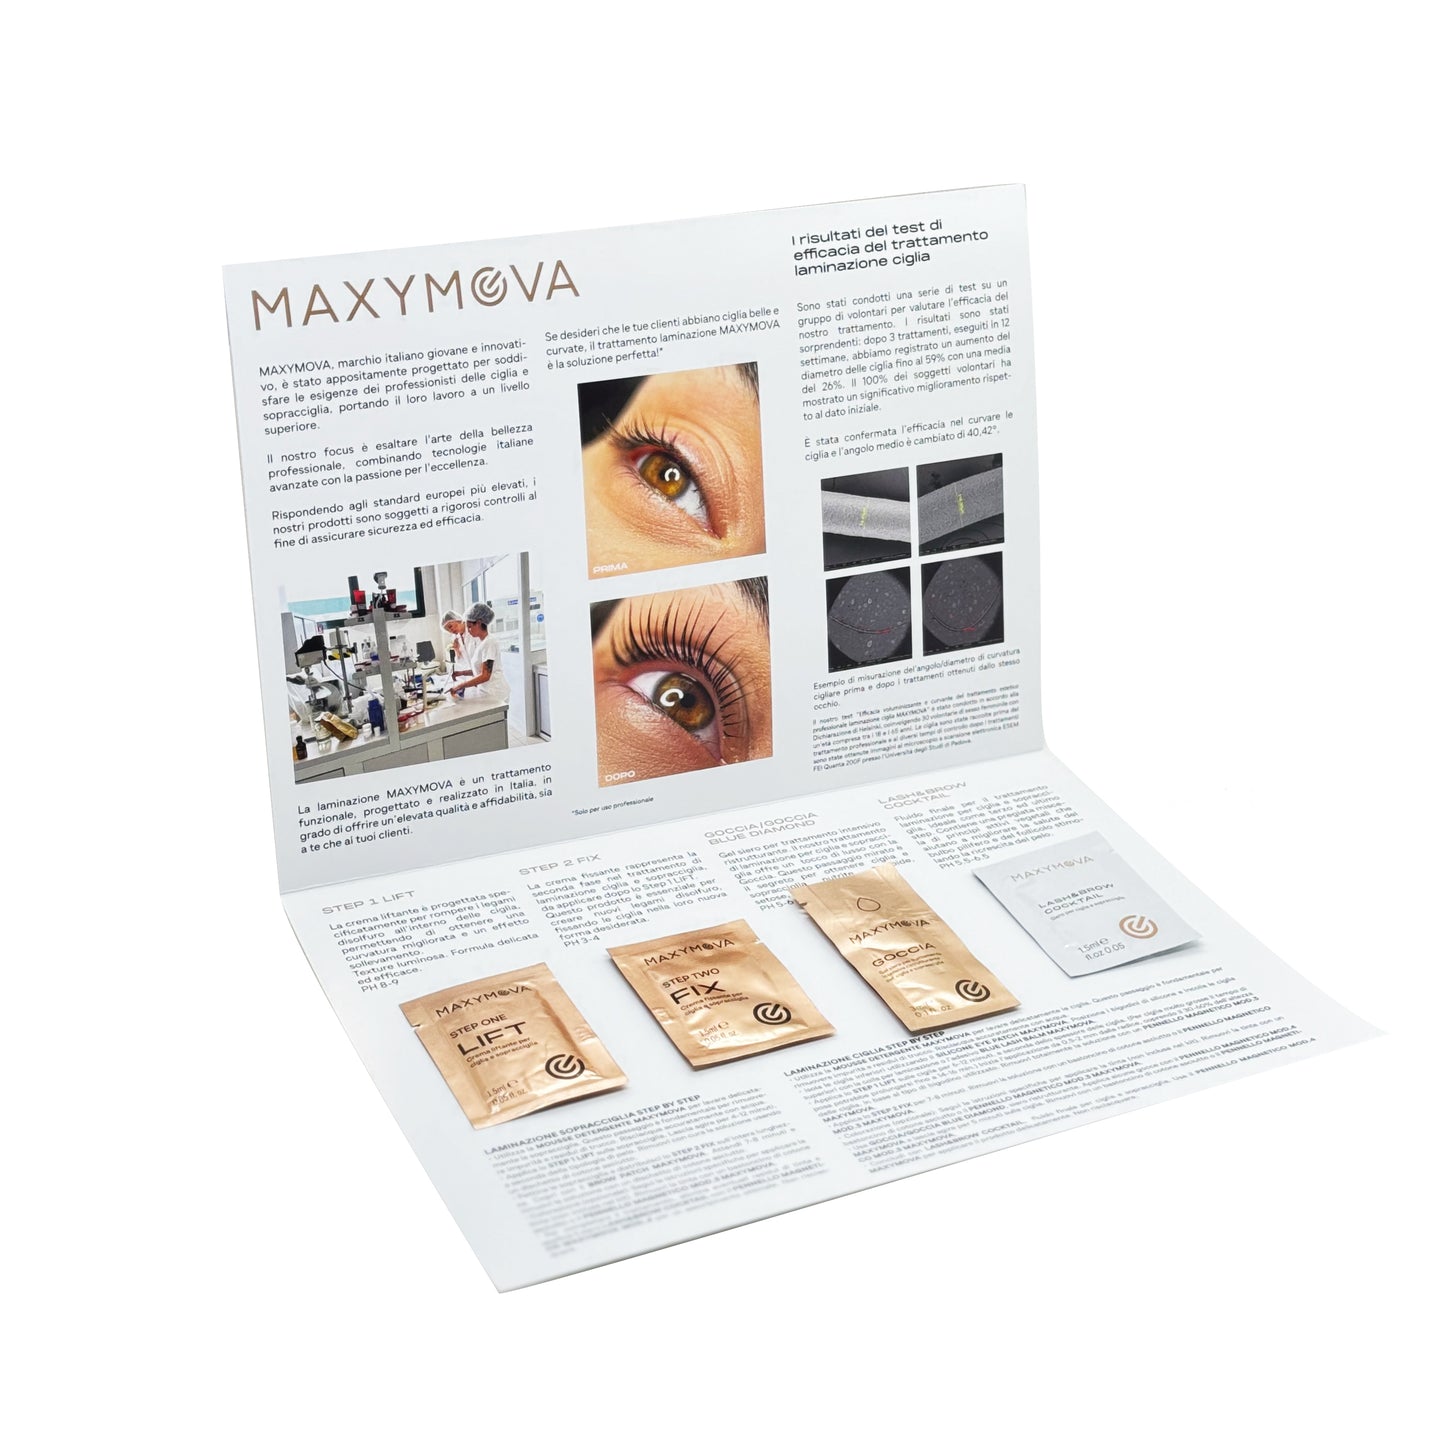 MAXYMOVA Salon Discovery Kit